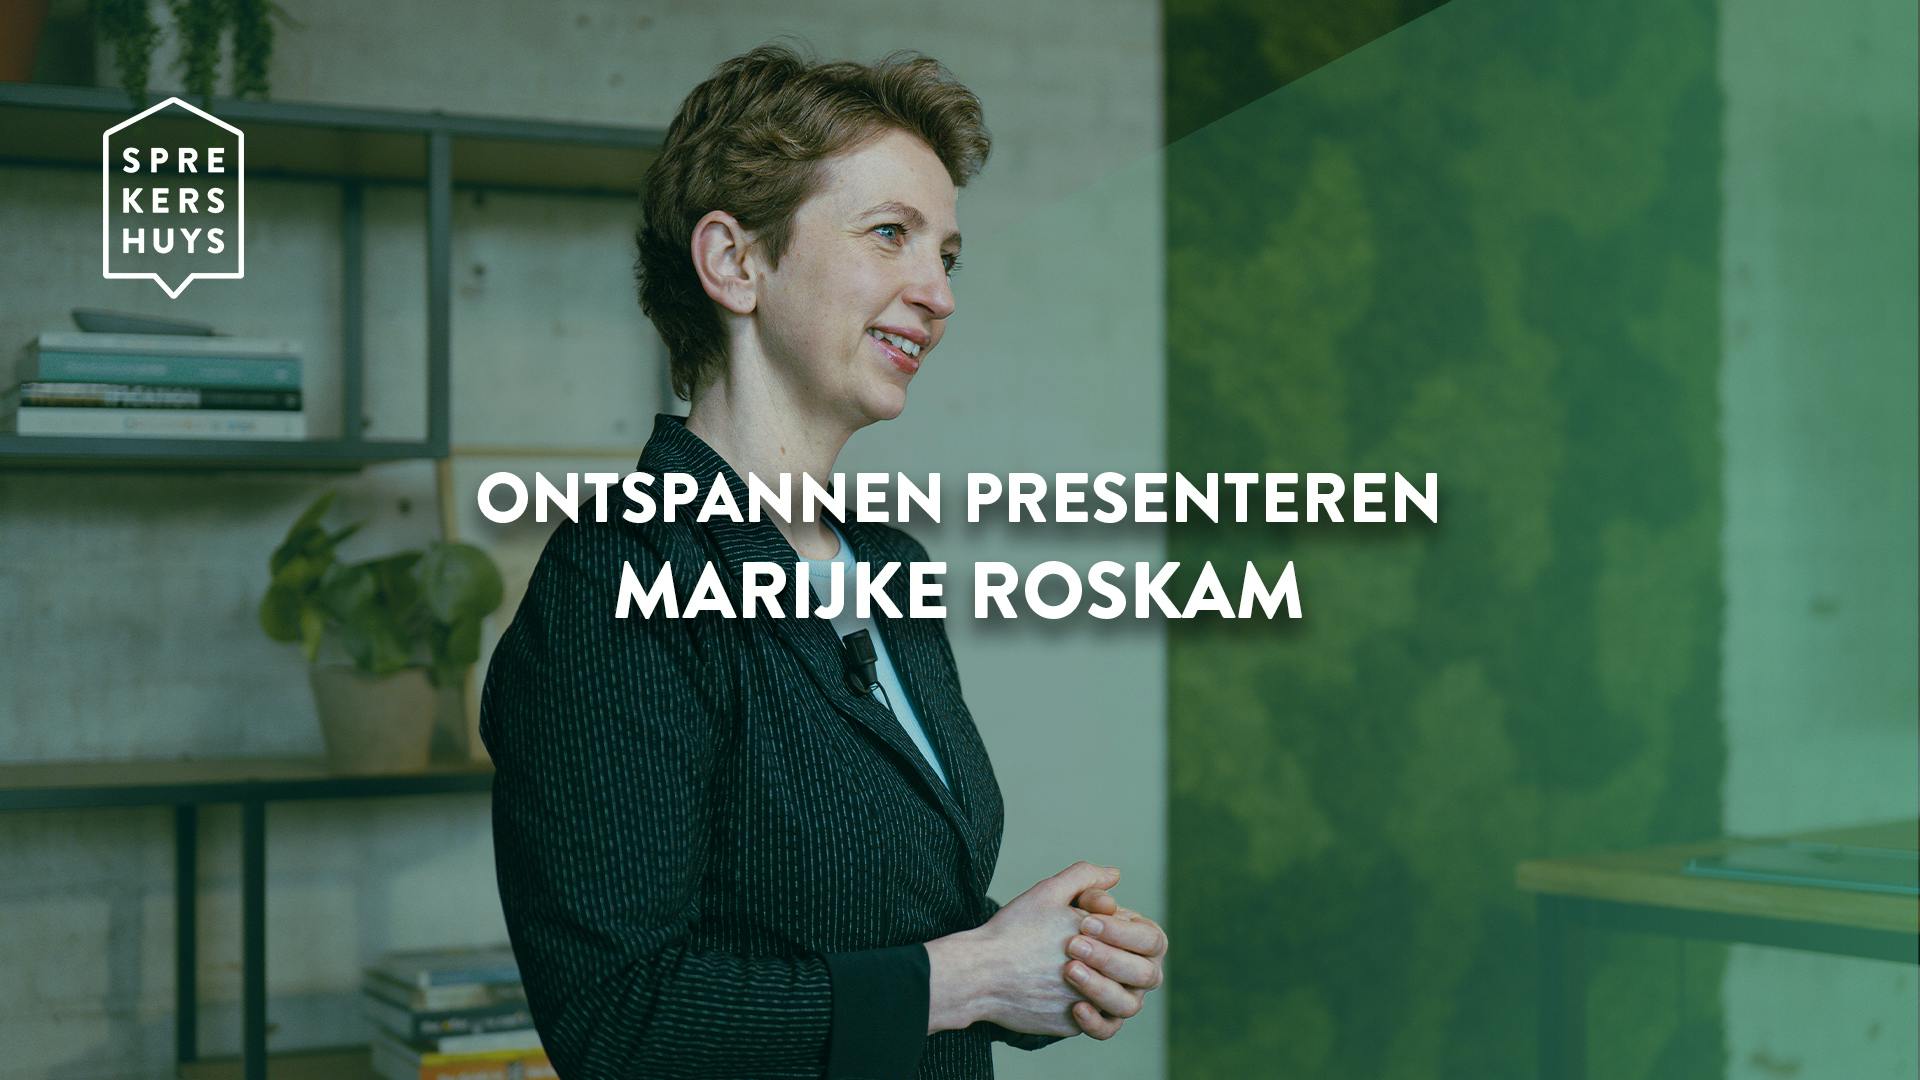 Marijke Roskam glimlachend kijkend naar zijkant met groene gloed over zich heen met teskt 'ontspannen presenteren marijke roskam'